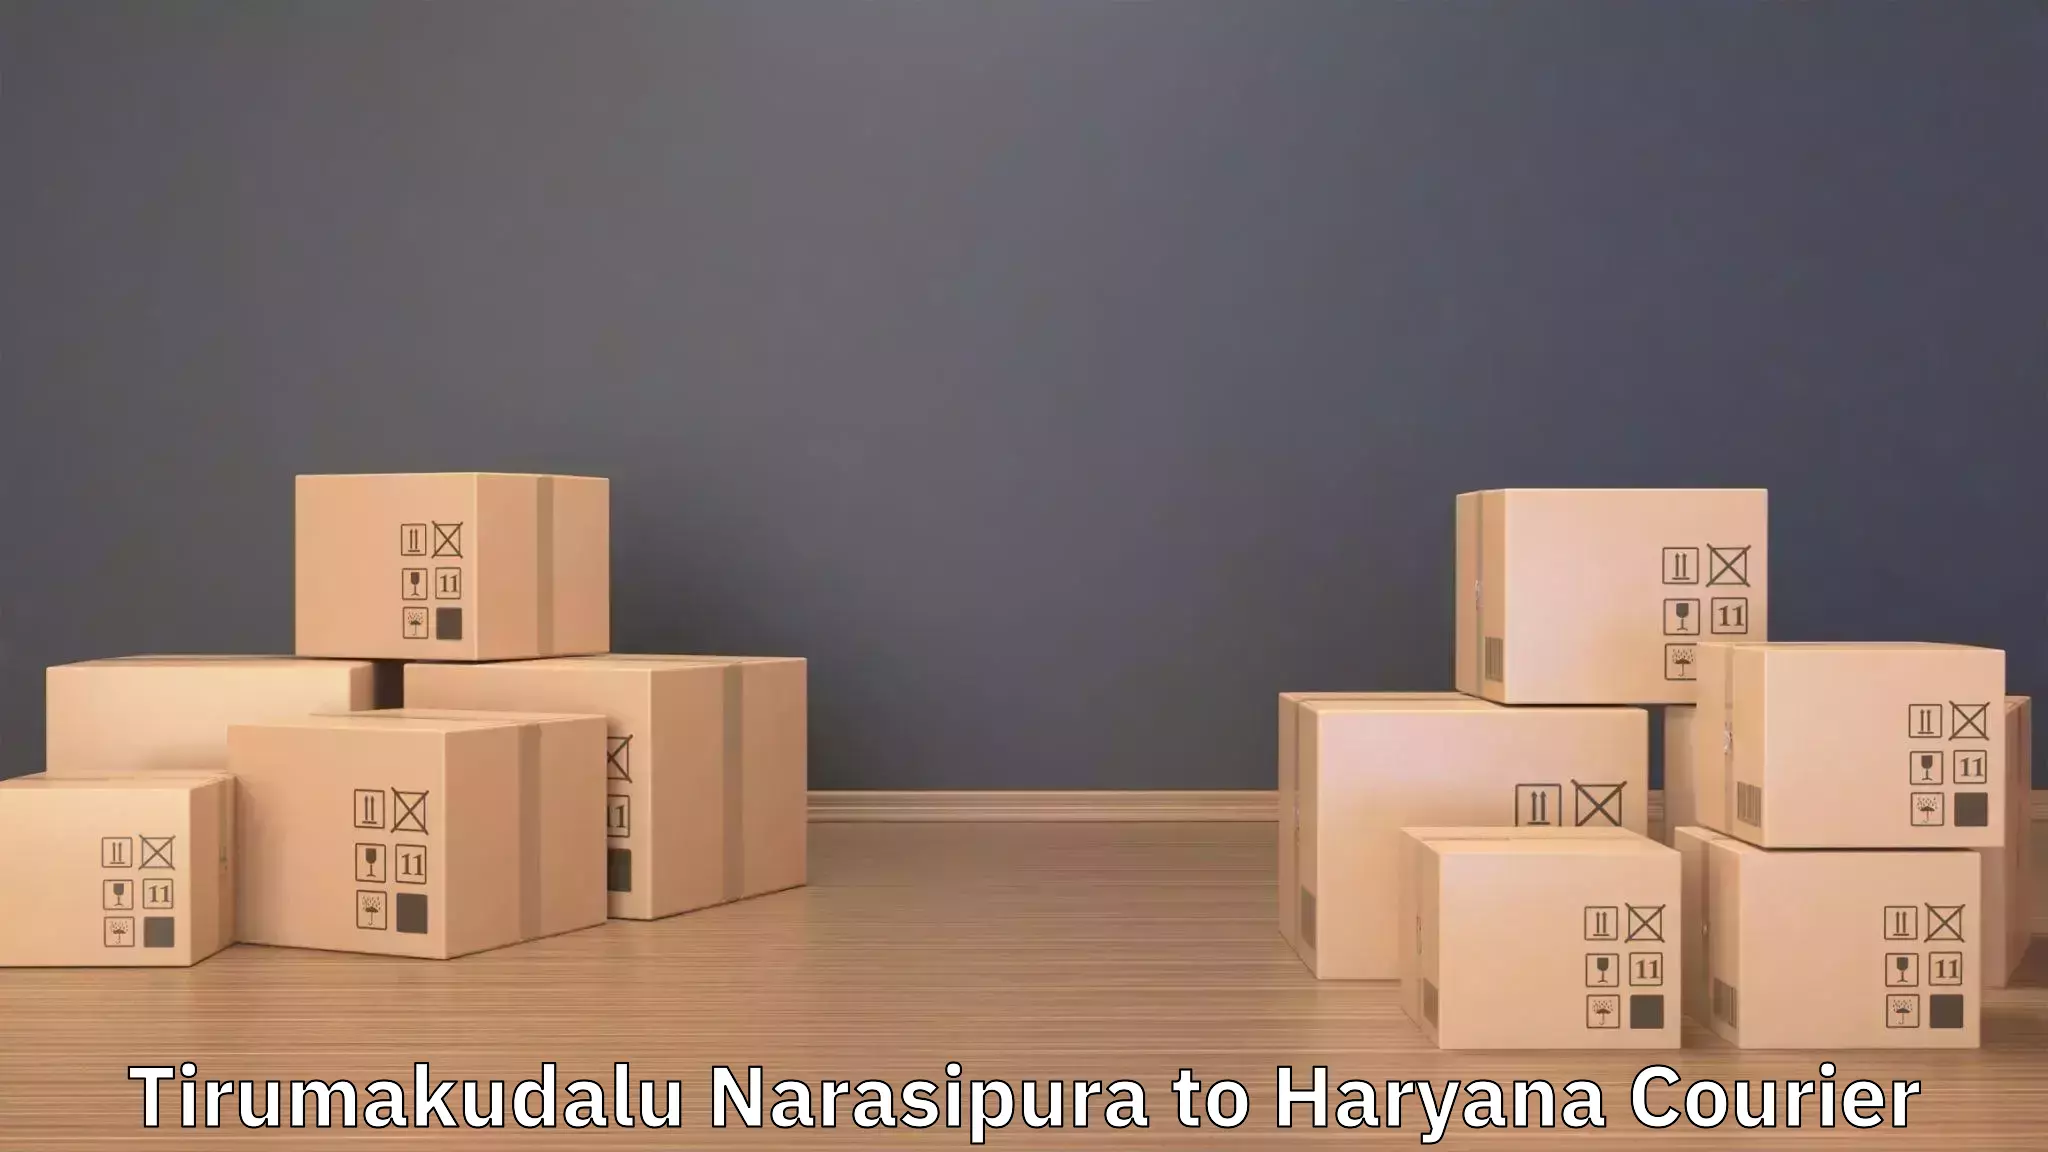 Furniture delivery service Tirumakudalu Narasipura to Sirsa